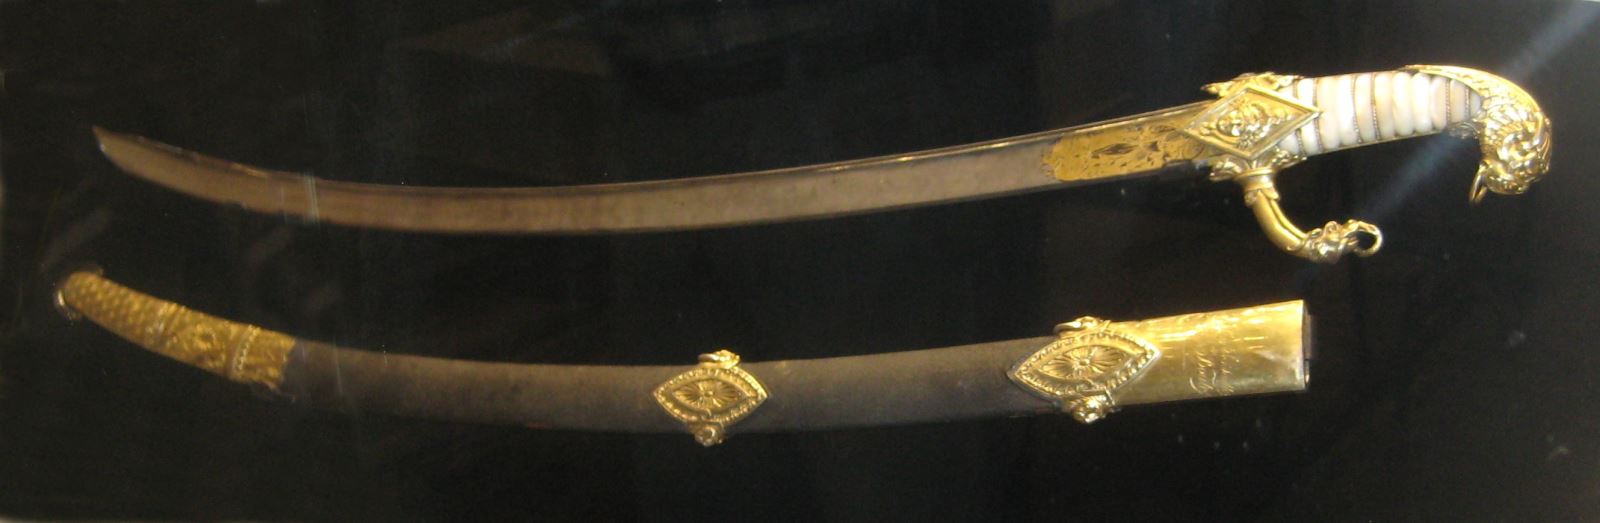 Thanh gươm quý của Napoleon.